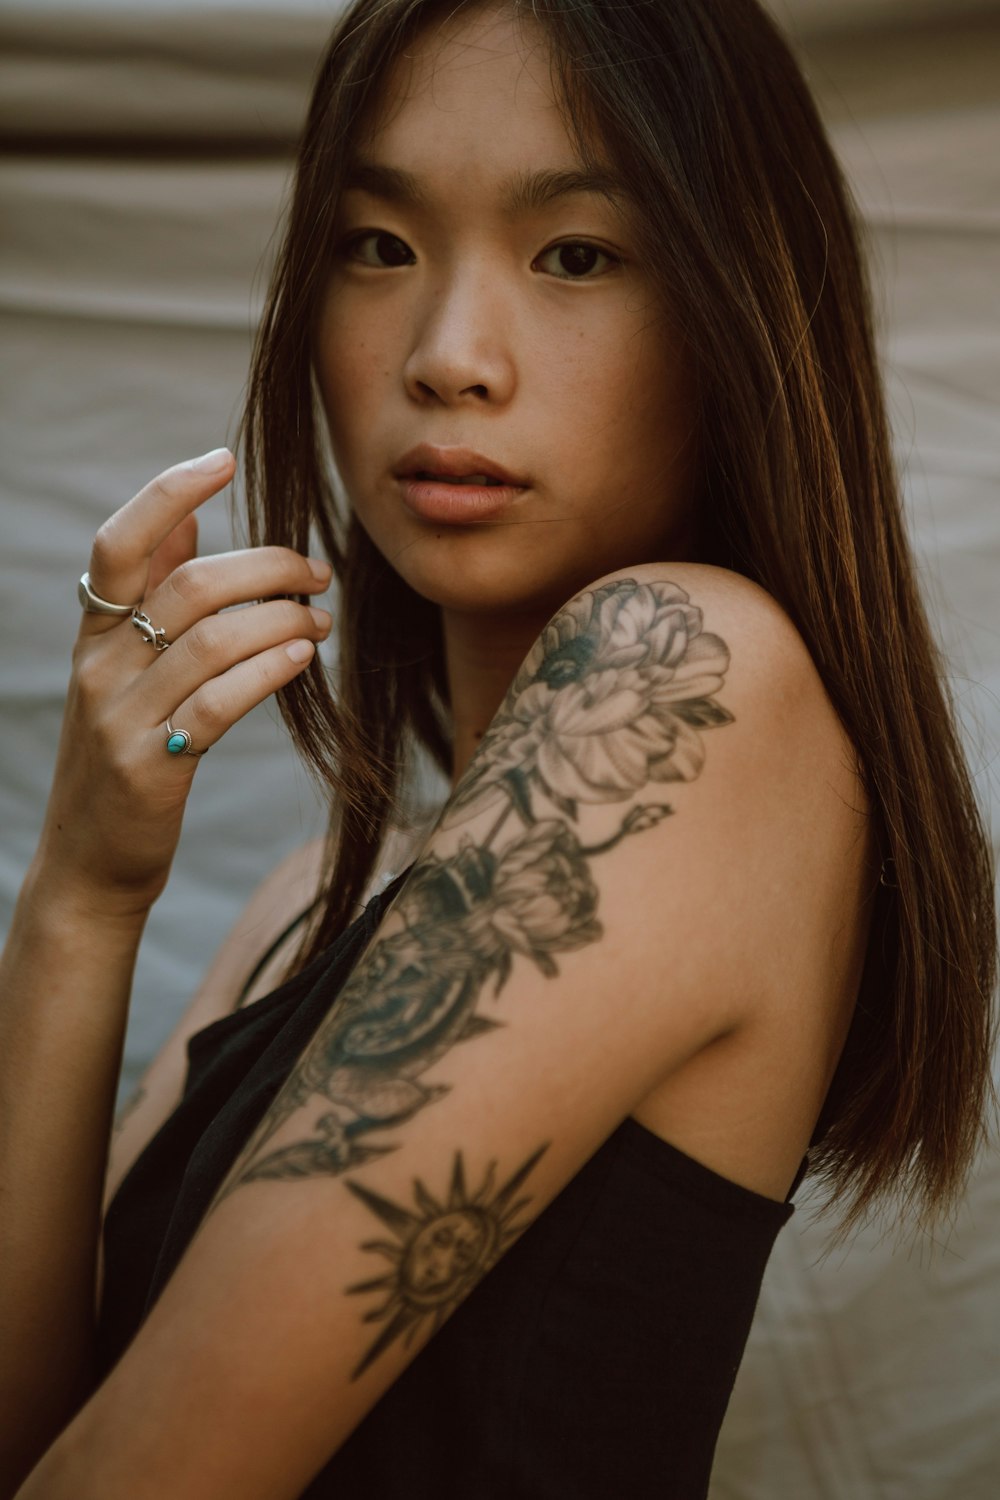 mulher com tatuagem floral preta em seu braço esquerdo